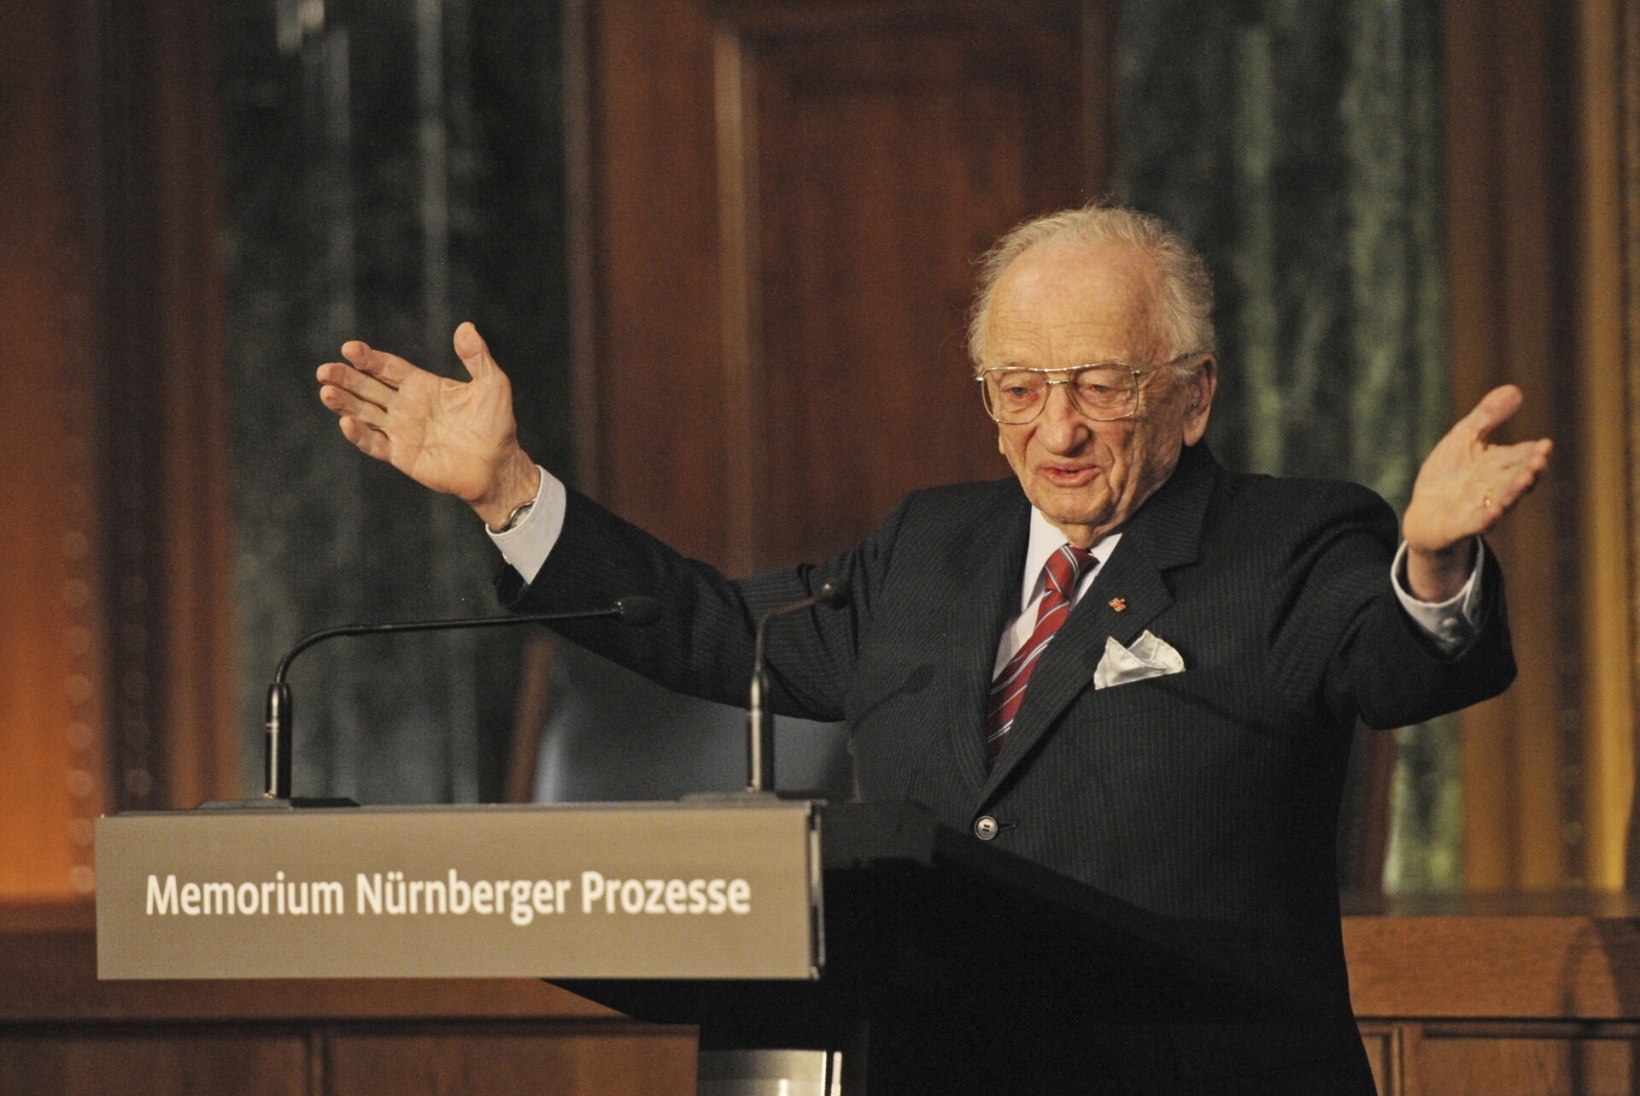 Viimane ellujäänud Nürnbergi prokurör suri 103aastasena